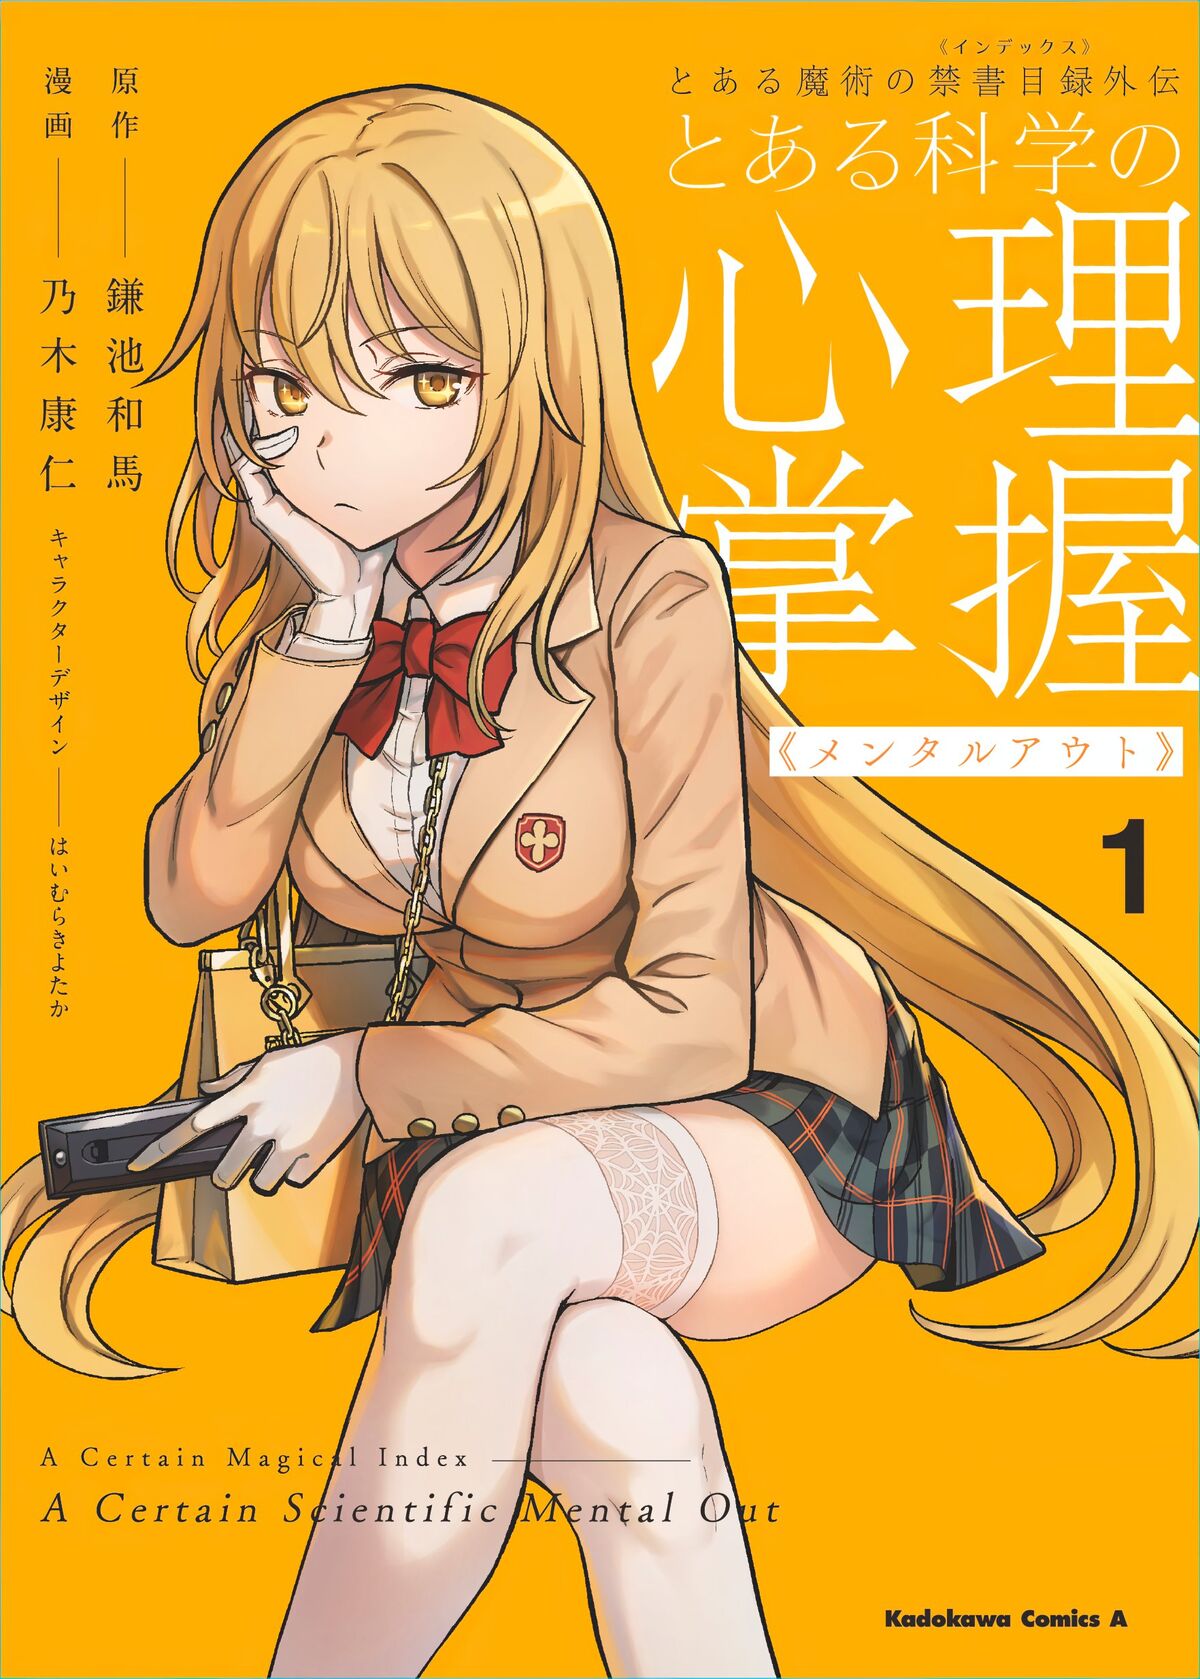 Toaru Kagaku no Accelerator Manga Volume 11, Toaru Majutsu no Index Wiki